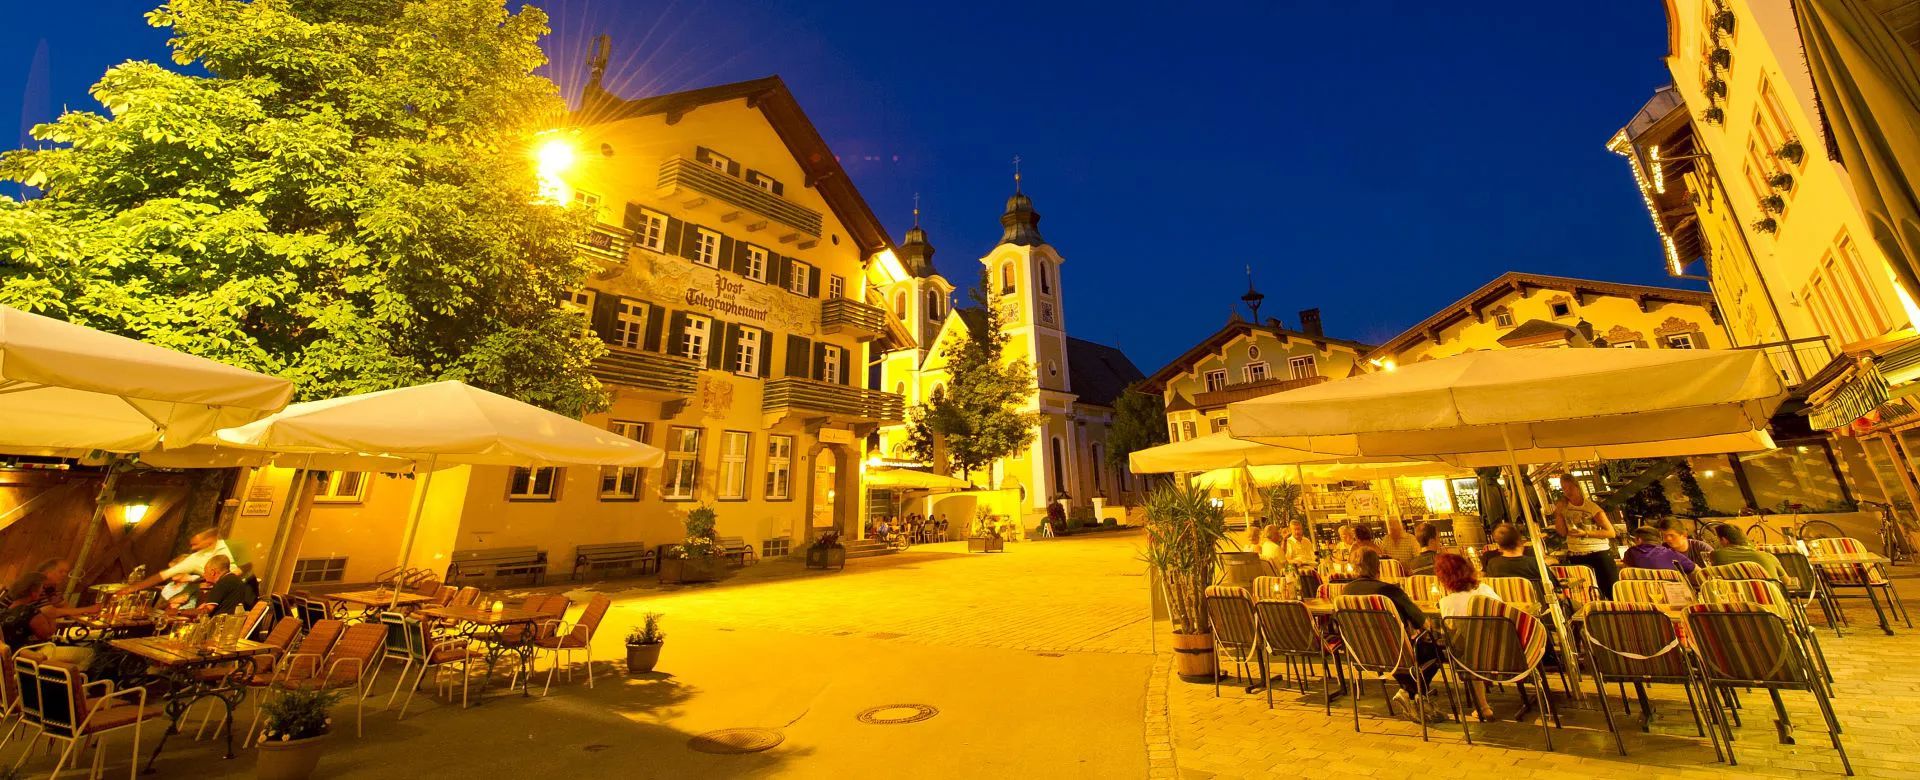 St. Johann In Tirol Slow Dating